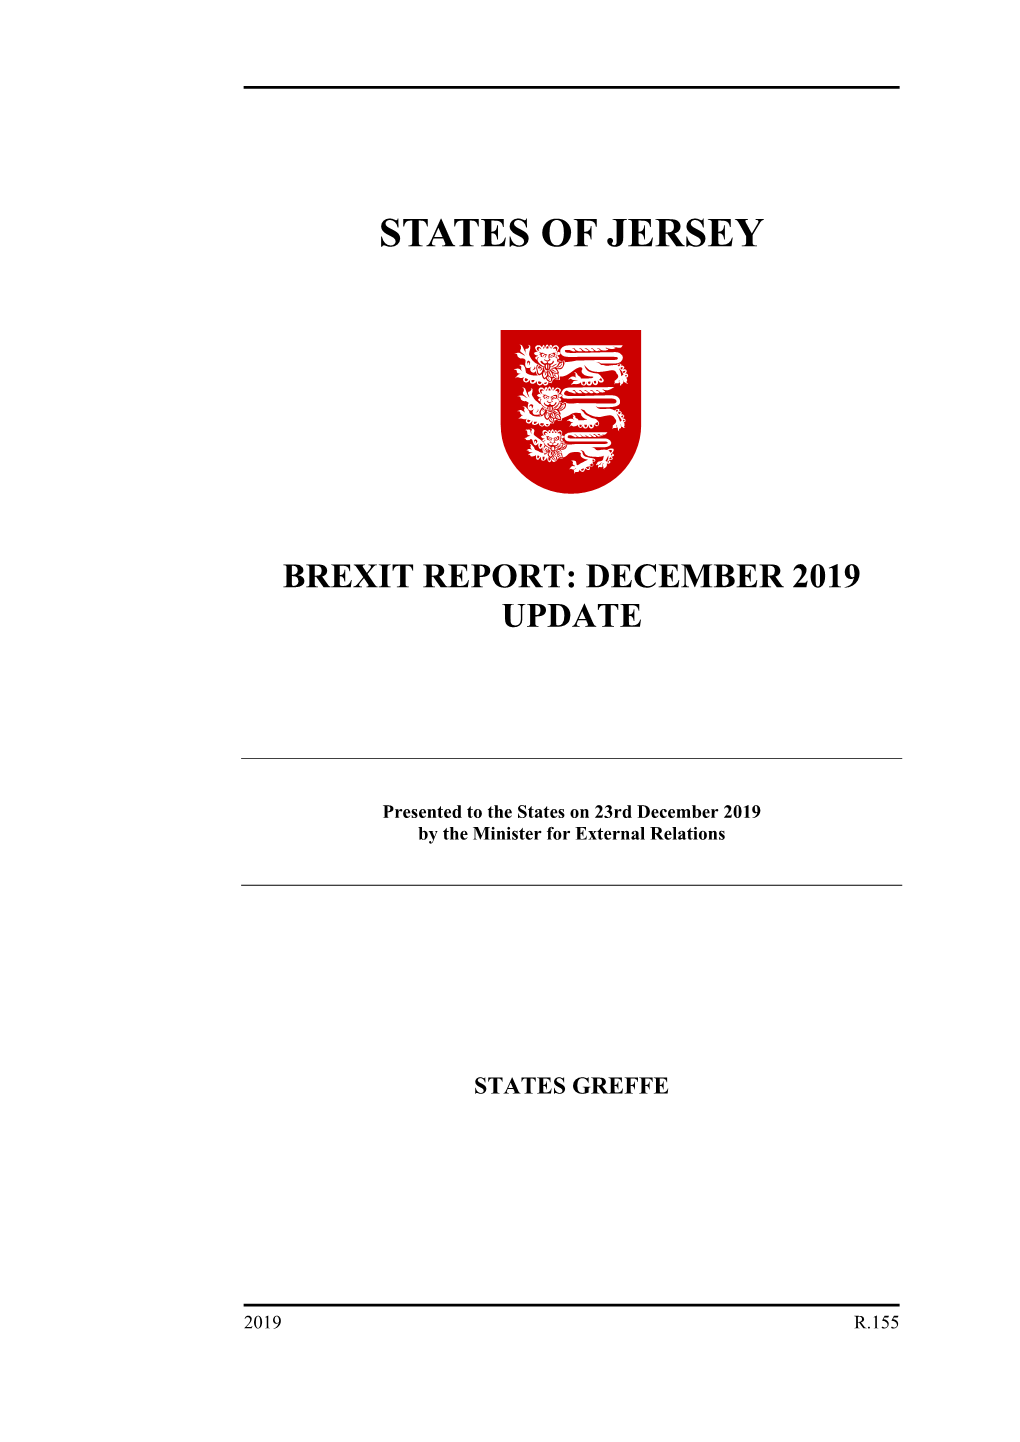 Brexit Report: December 2019 Update